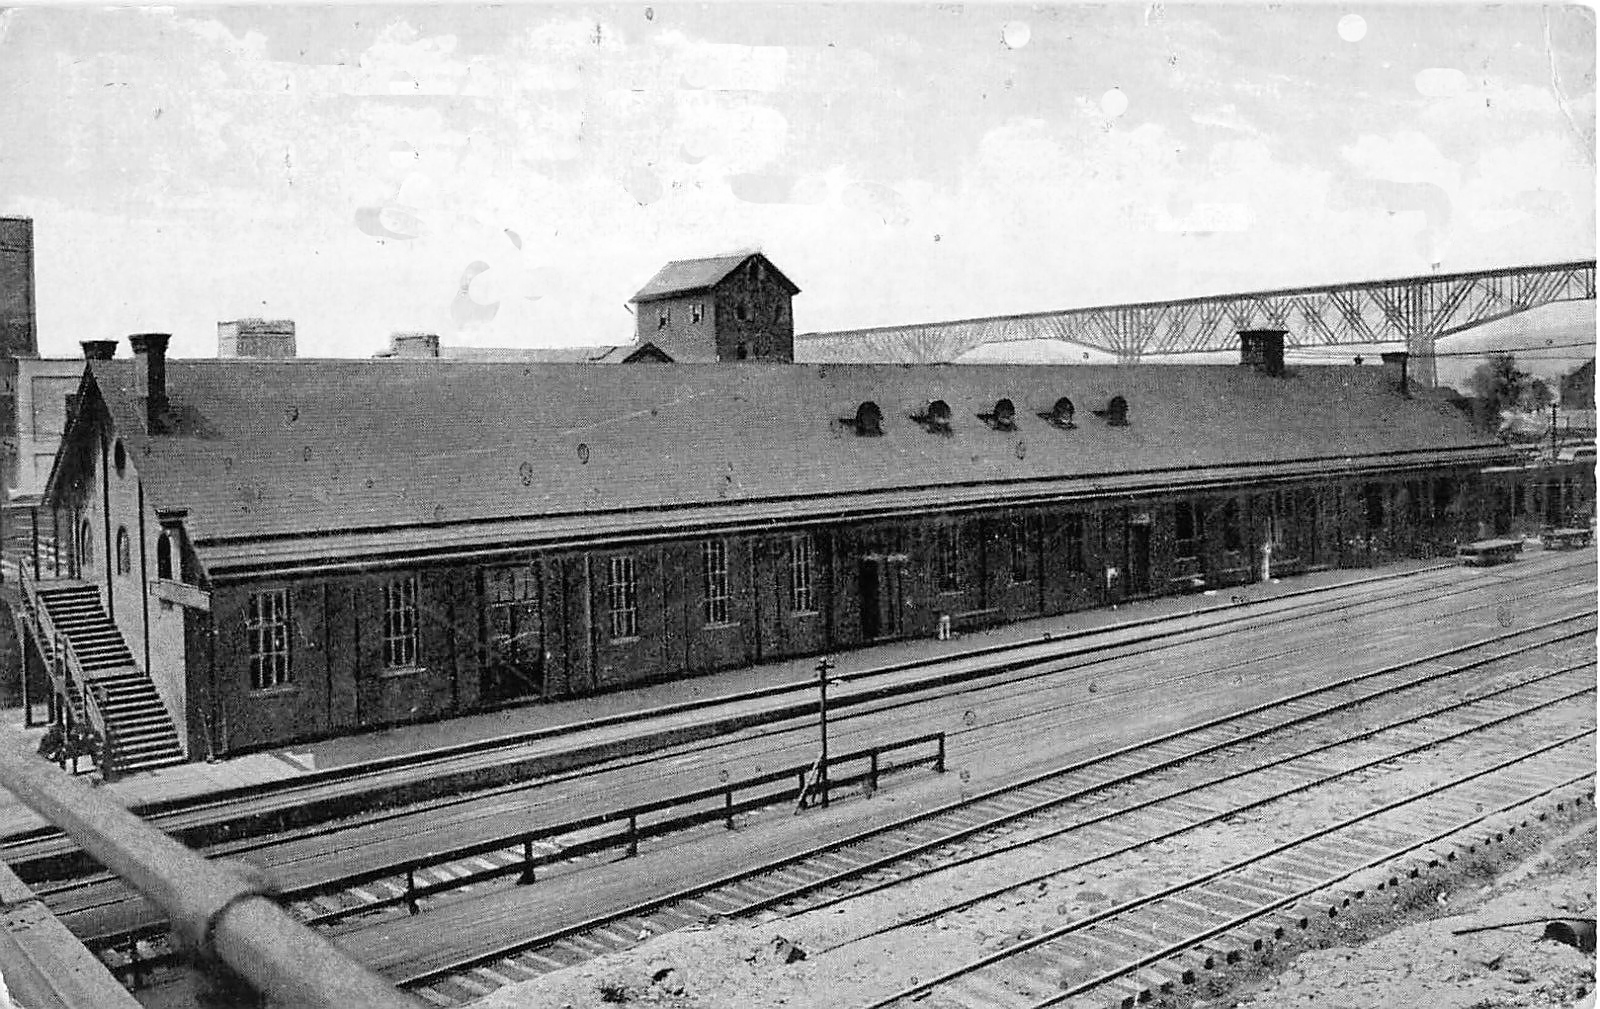 Poughkeepsie Railroad Station, Poughkeepsie NY, Dutchess County, 1910